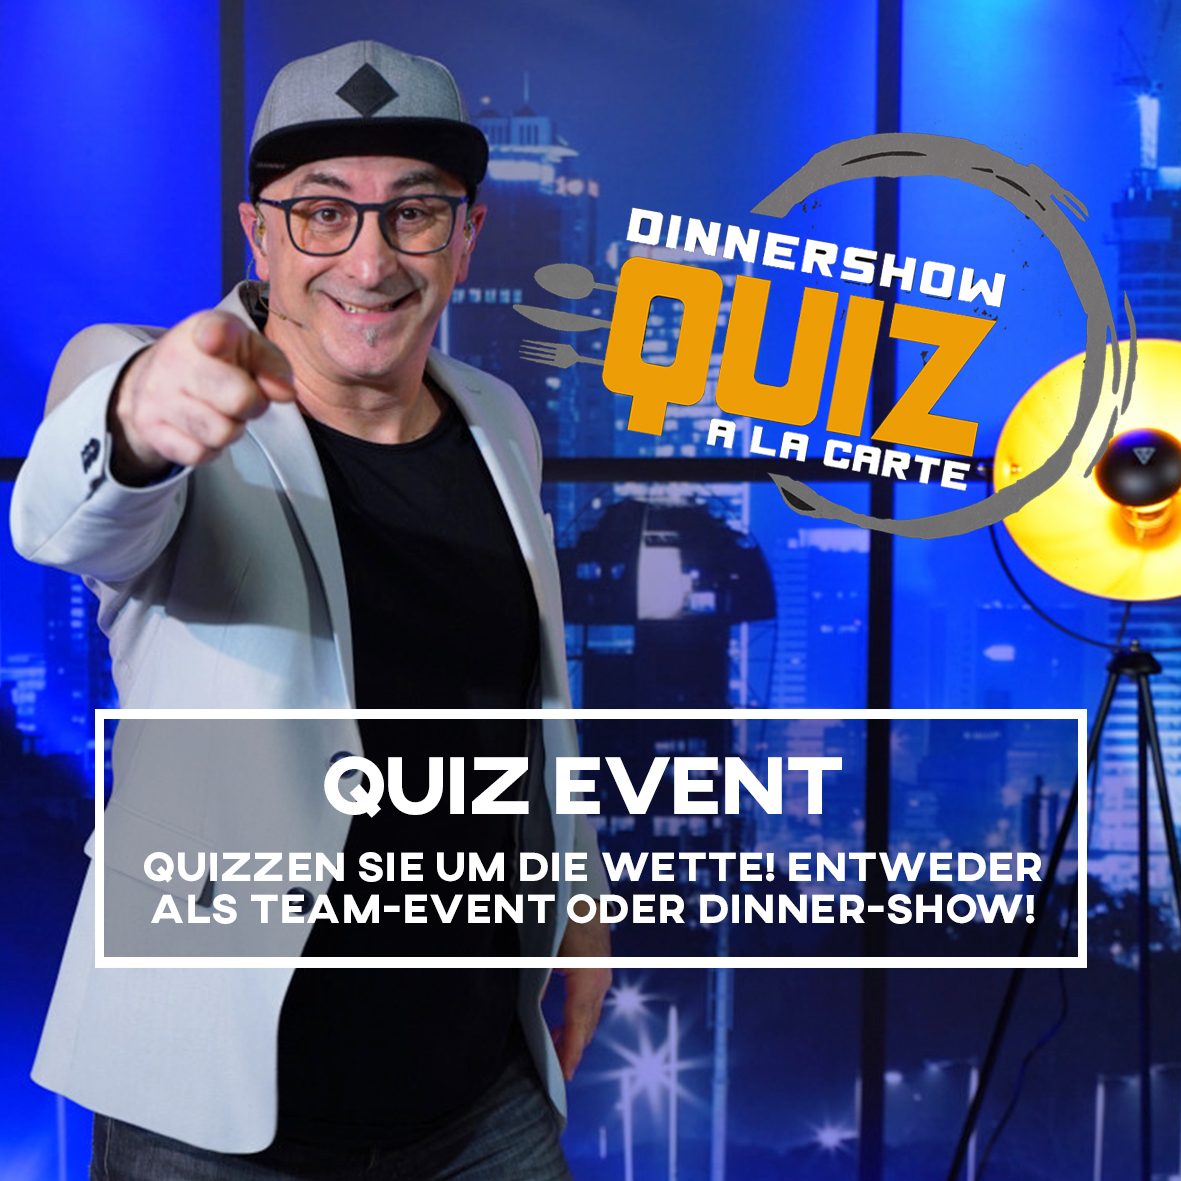 Teamevents, Teambuilding, Location, Dinnershow (Quadrat-Button) Quiz-Event